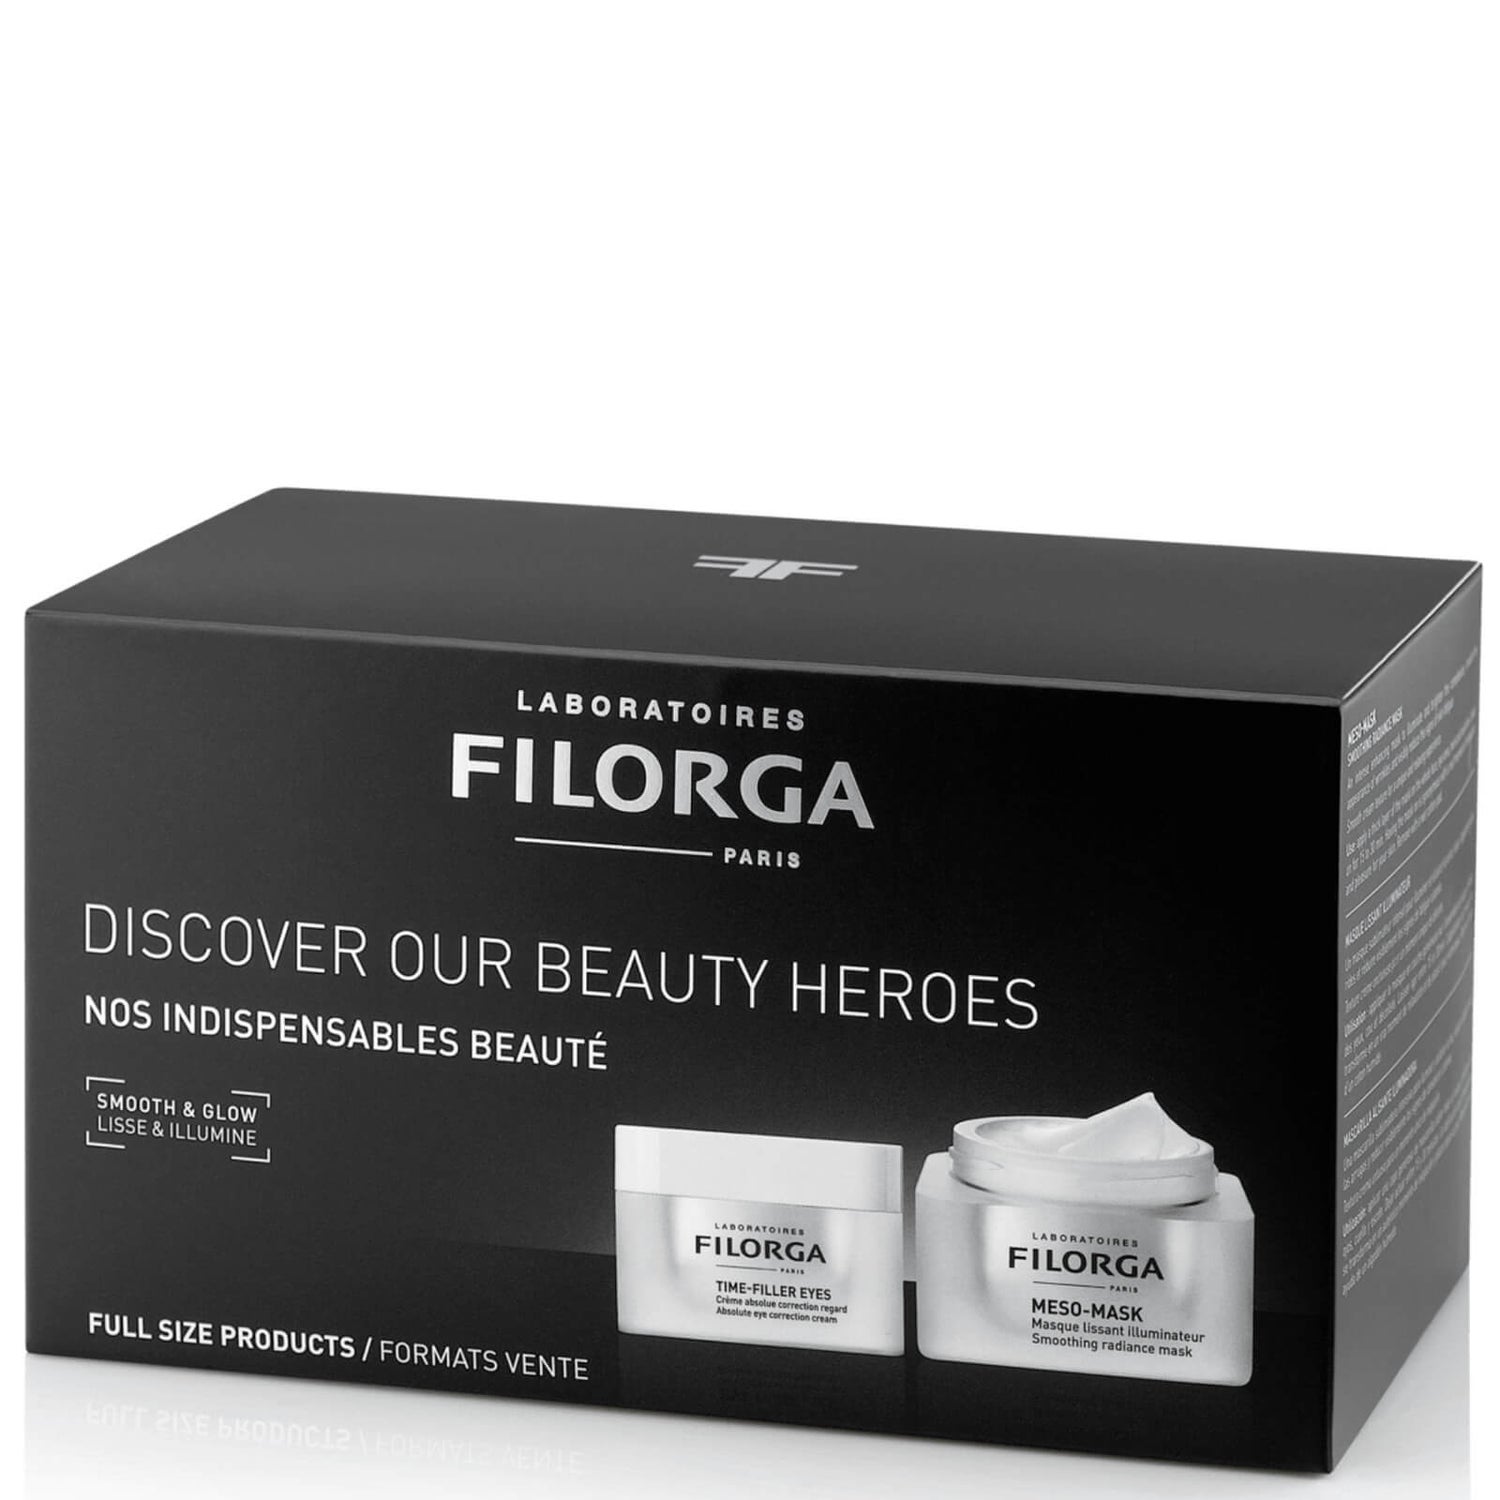 Filorga Meso-Mask and Time-Filler Eyes Gift Set